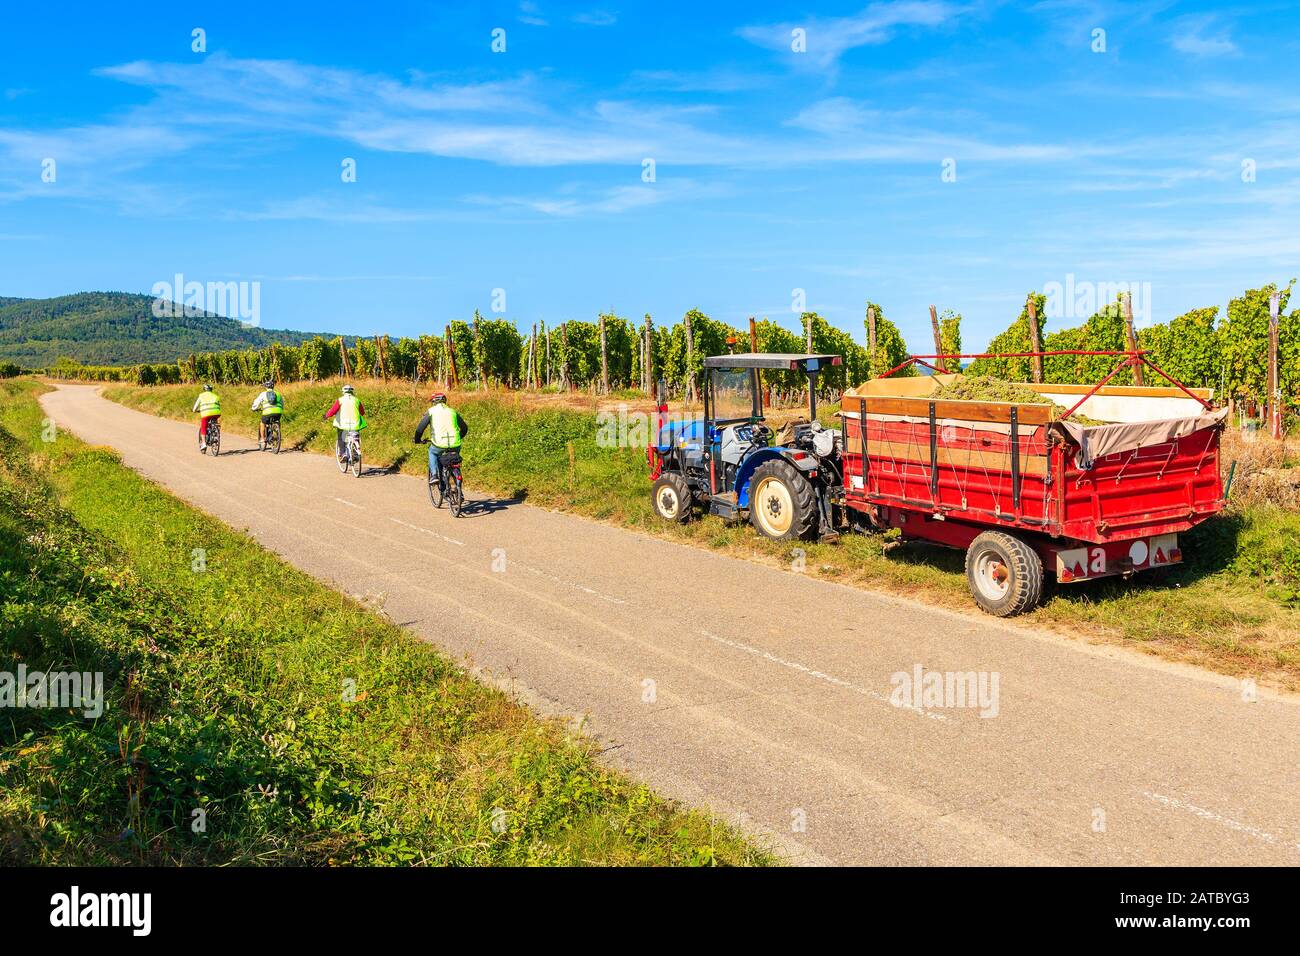 Ciclistas que pasan por el tractor con remolque durante la cosecha en los viñedos de la aldea de Riquewihr, la ruta del vino de Alsacia, Francia Foto de stock